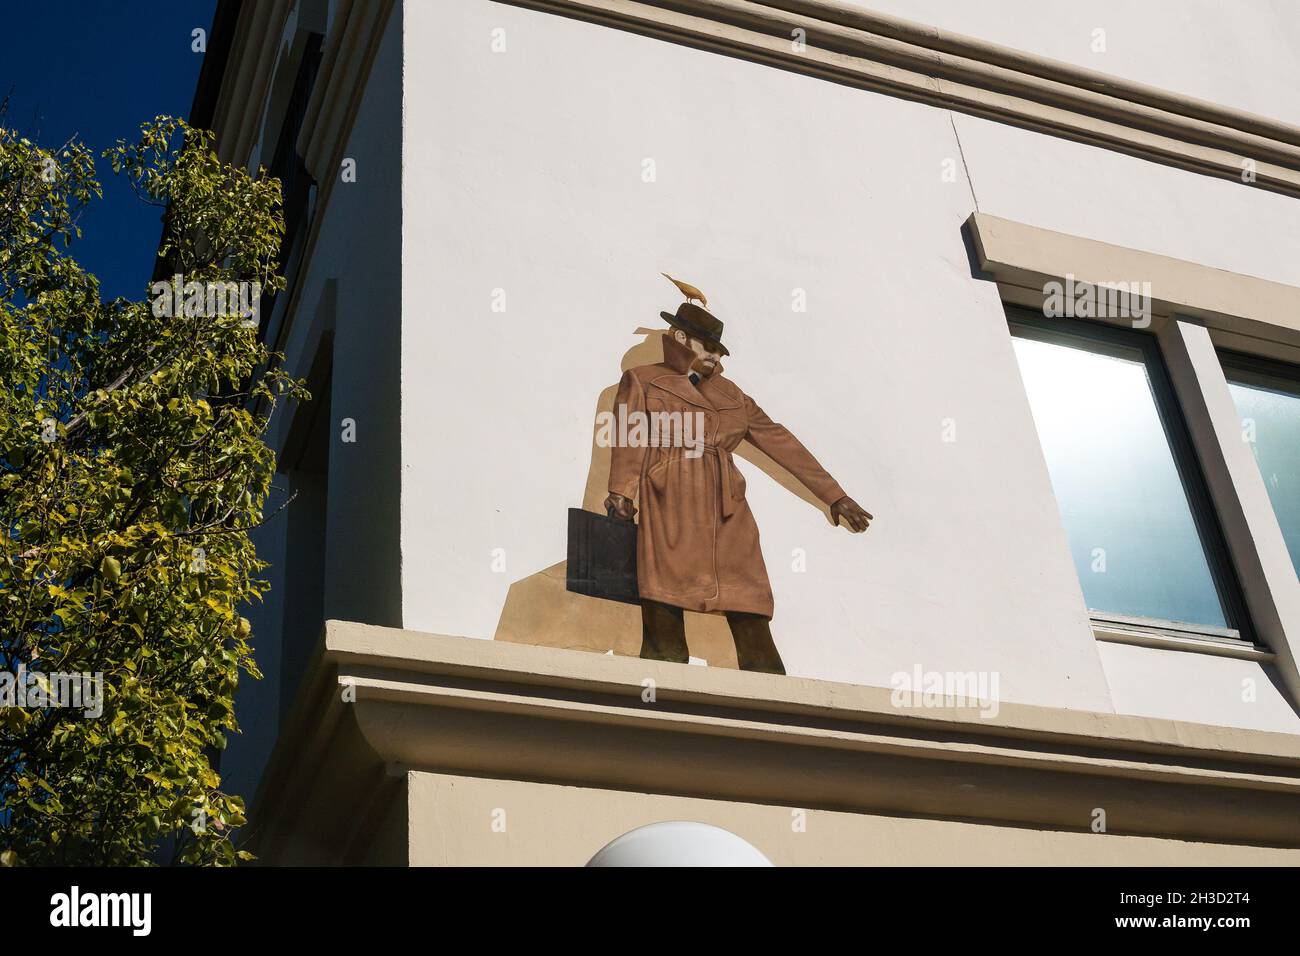 L'inspecteur - trompe-l'oeil murale d'un homme sur une corniche, par Greg Brown, sur le côté de l'Avid Bank au 192 Lytton Ave, Palo Alto, Californie. Banque D'Images